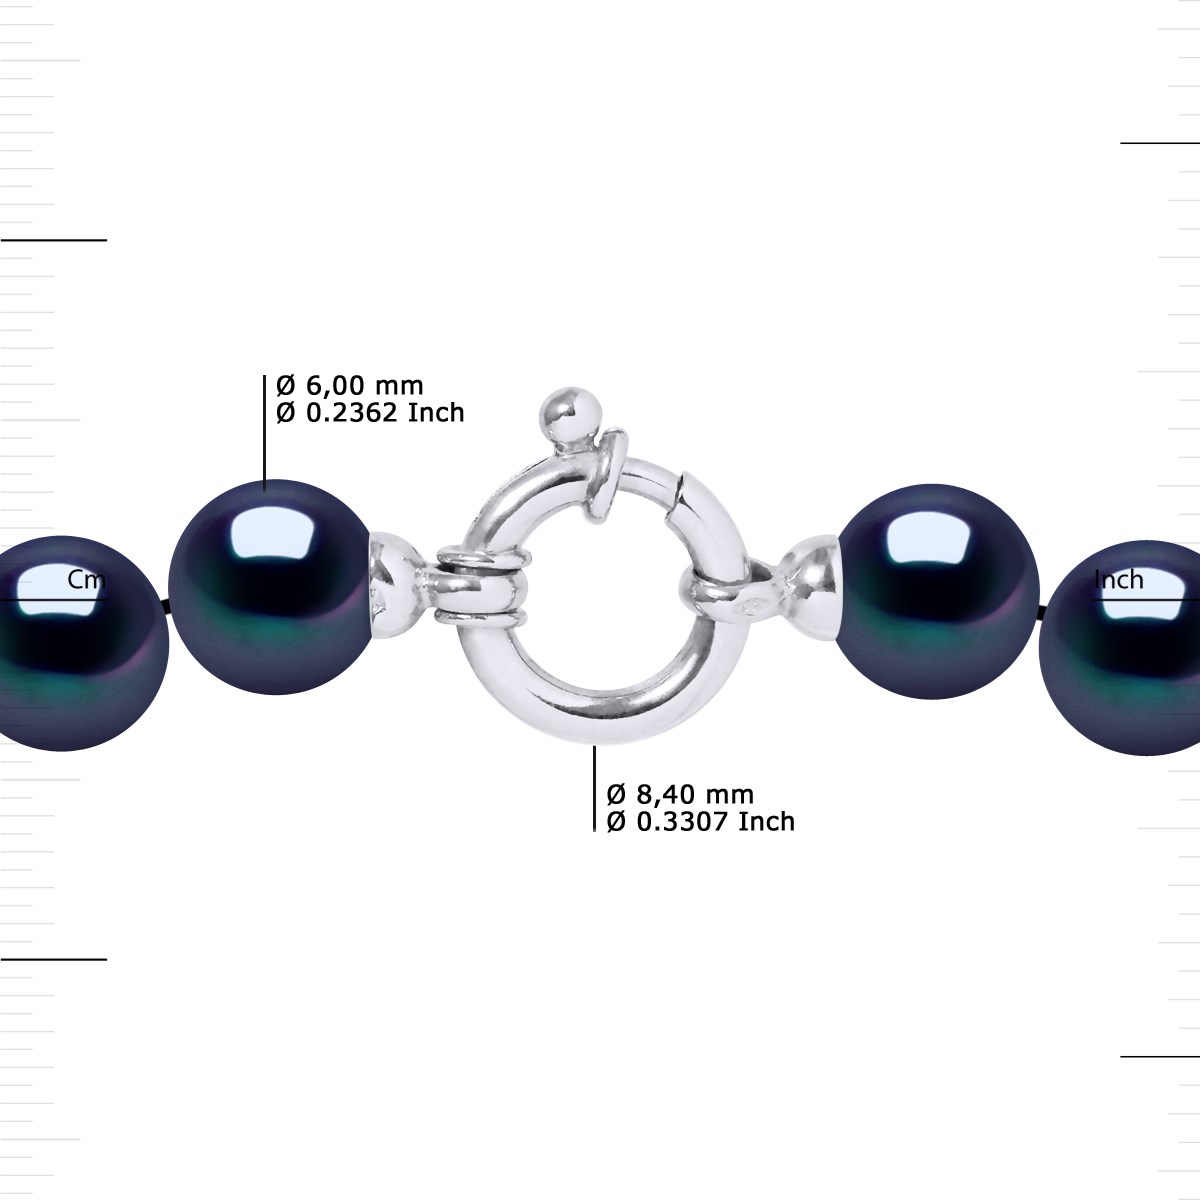 Collier Rang de Perles d'Eau Douce en Chute 10-6 mm PRINCESSE Fermoir Prestige Or Blanc 18 Carats - vue 3